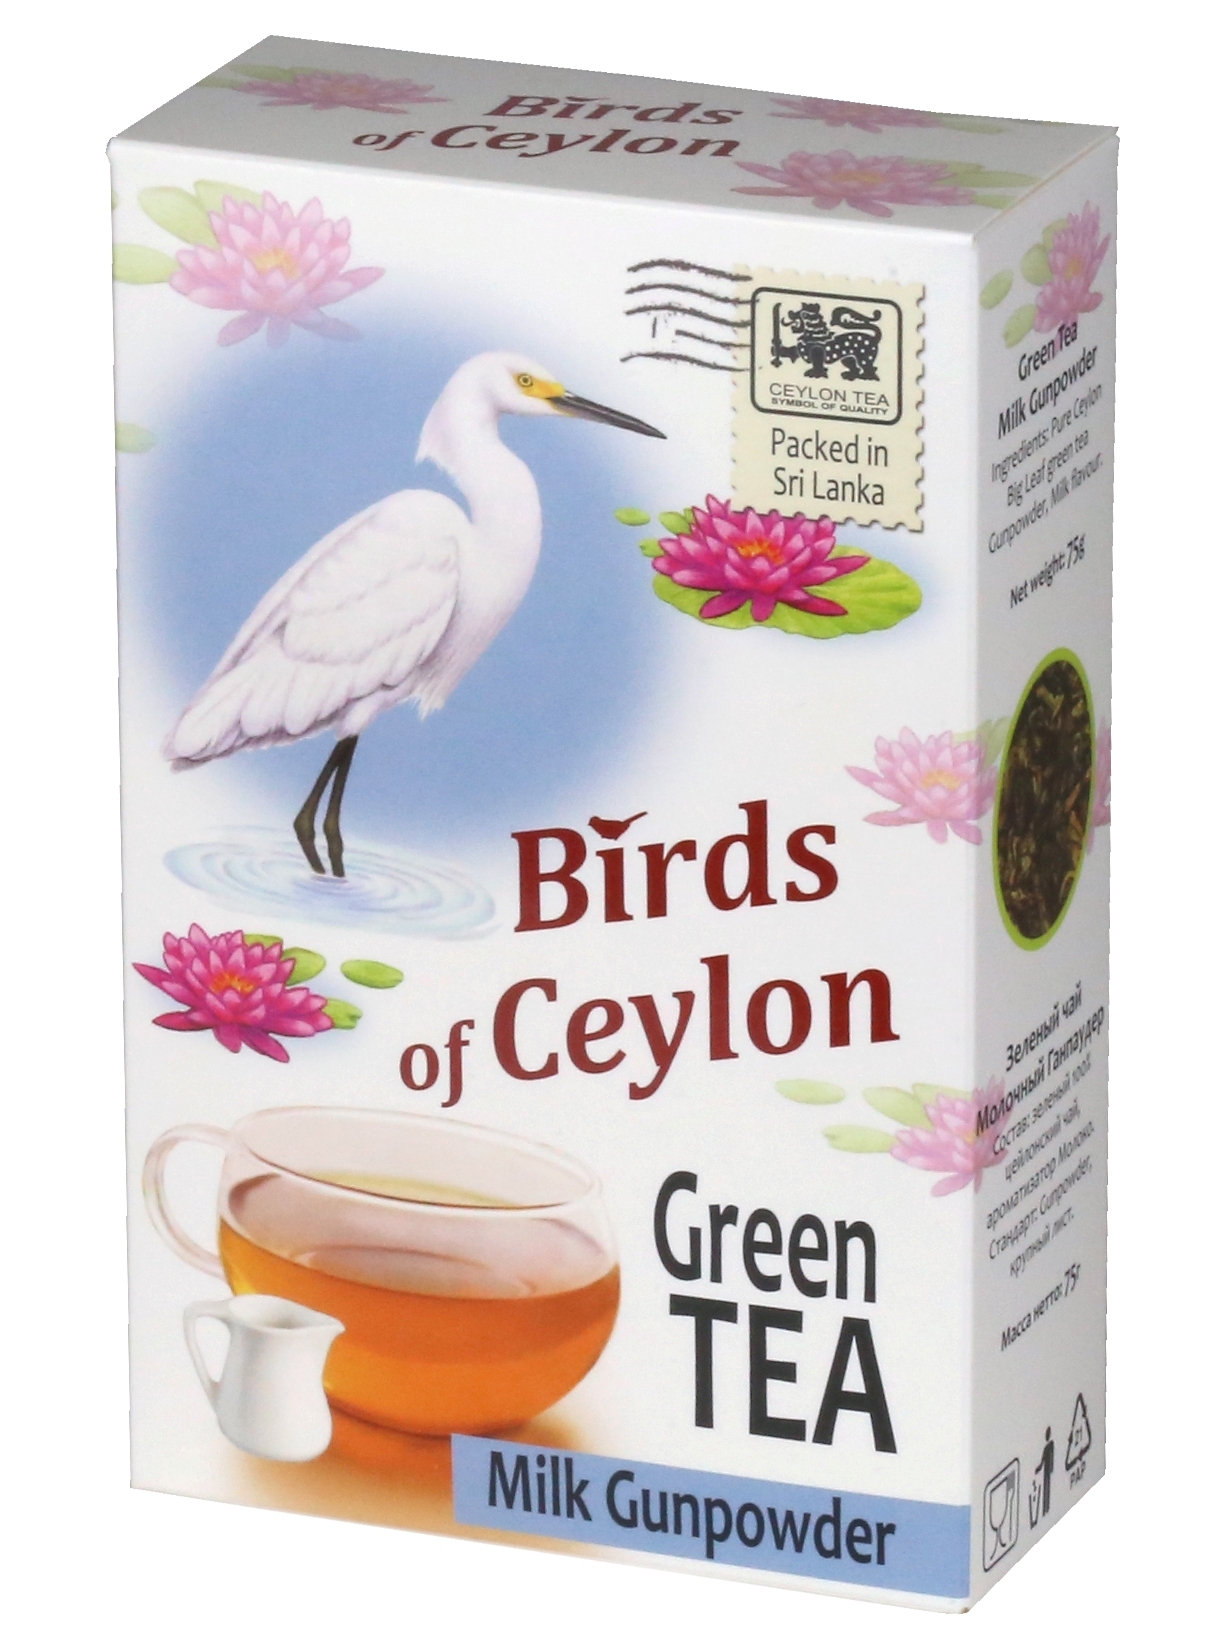 Чай зеленый листовой Молочный Ганпаудер Птицы Цейлона, Шри-Ланка, 75 г